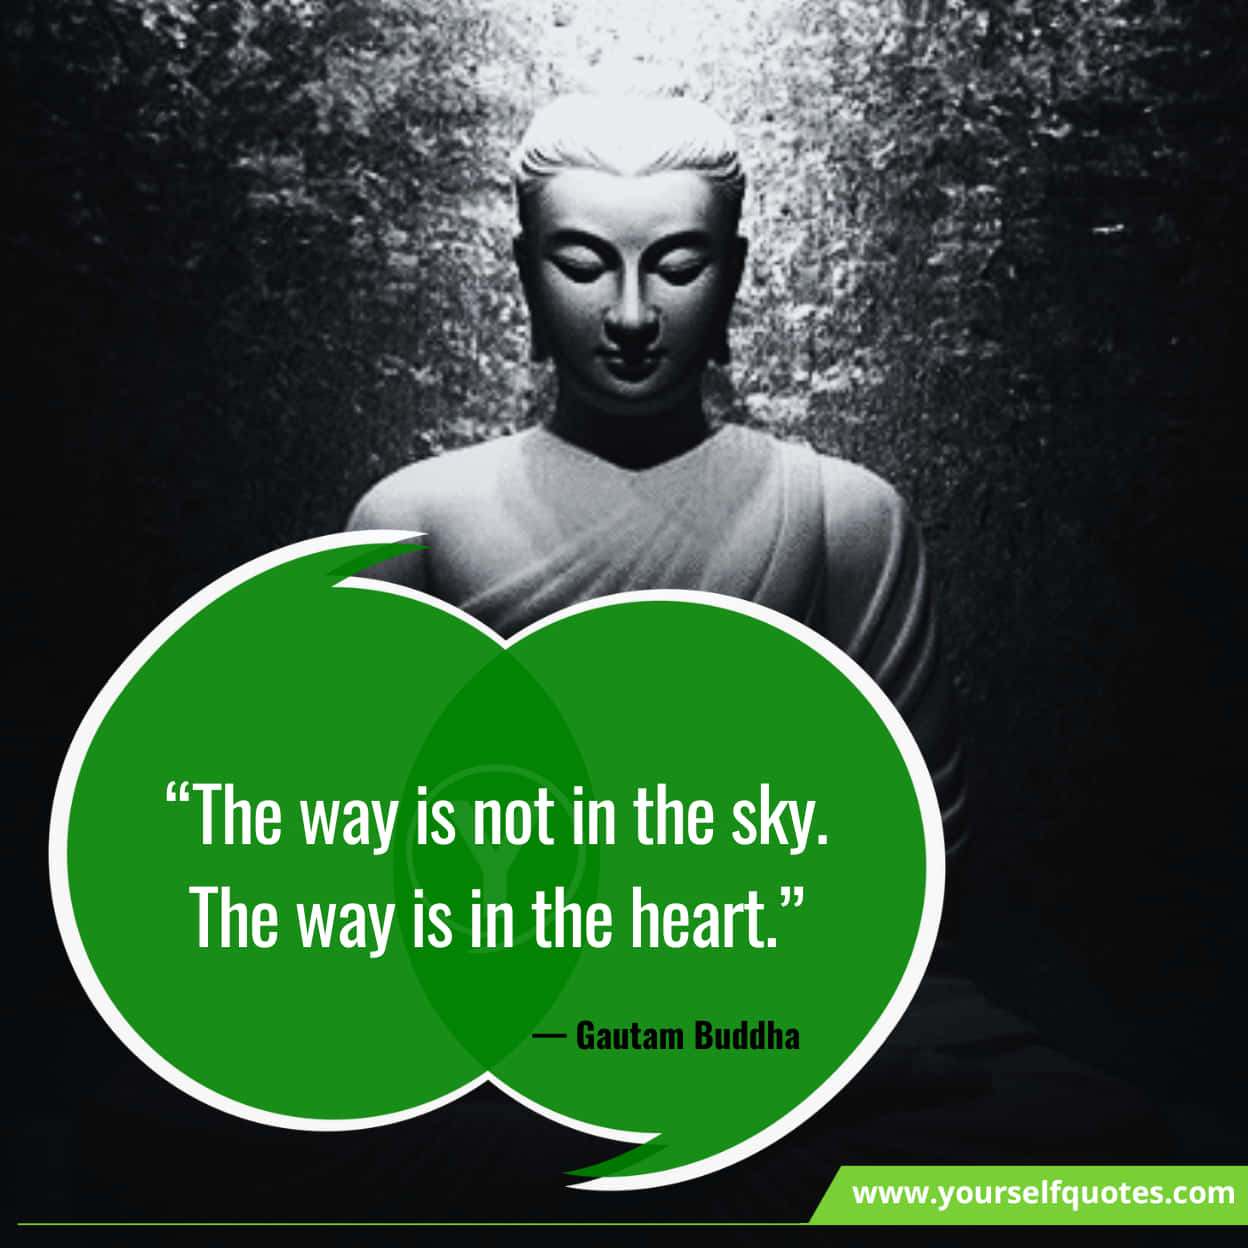 Inspiring Gautam Buddha Quotes